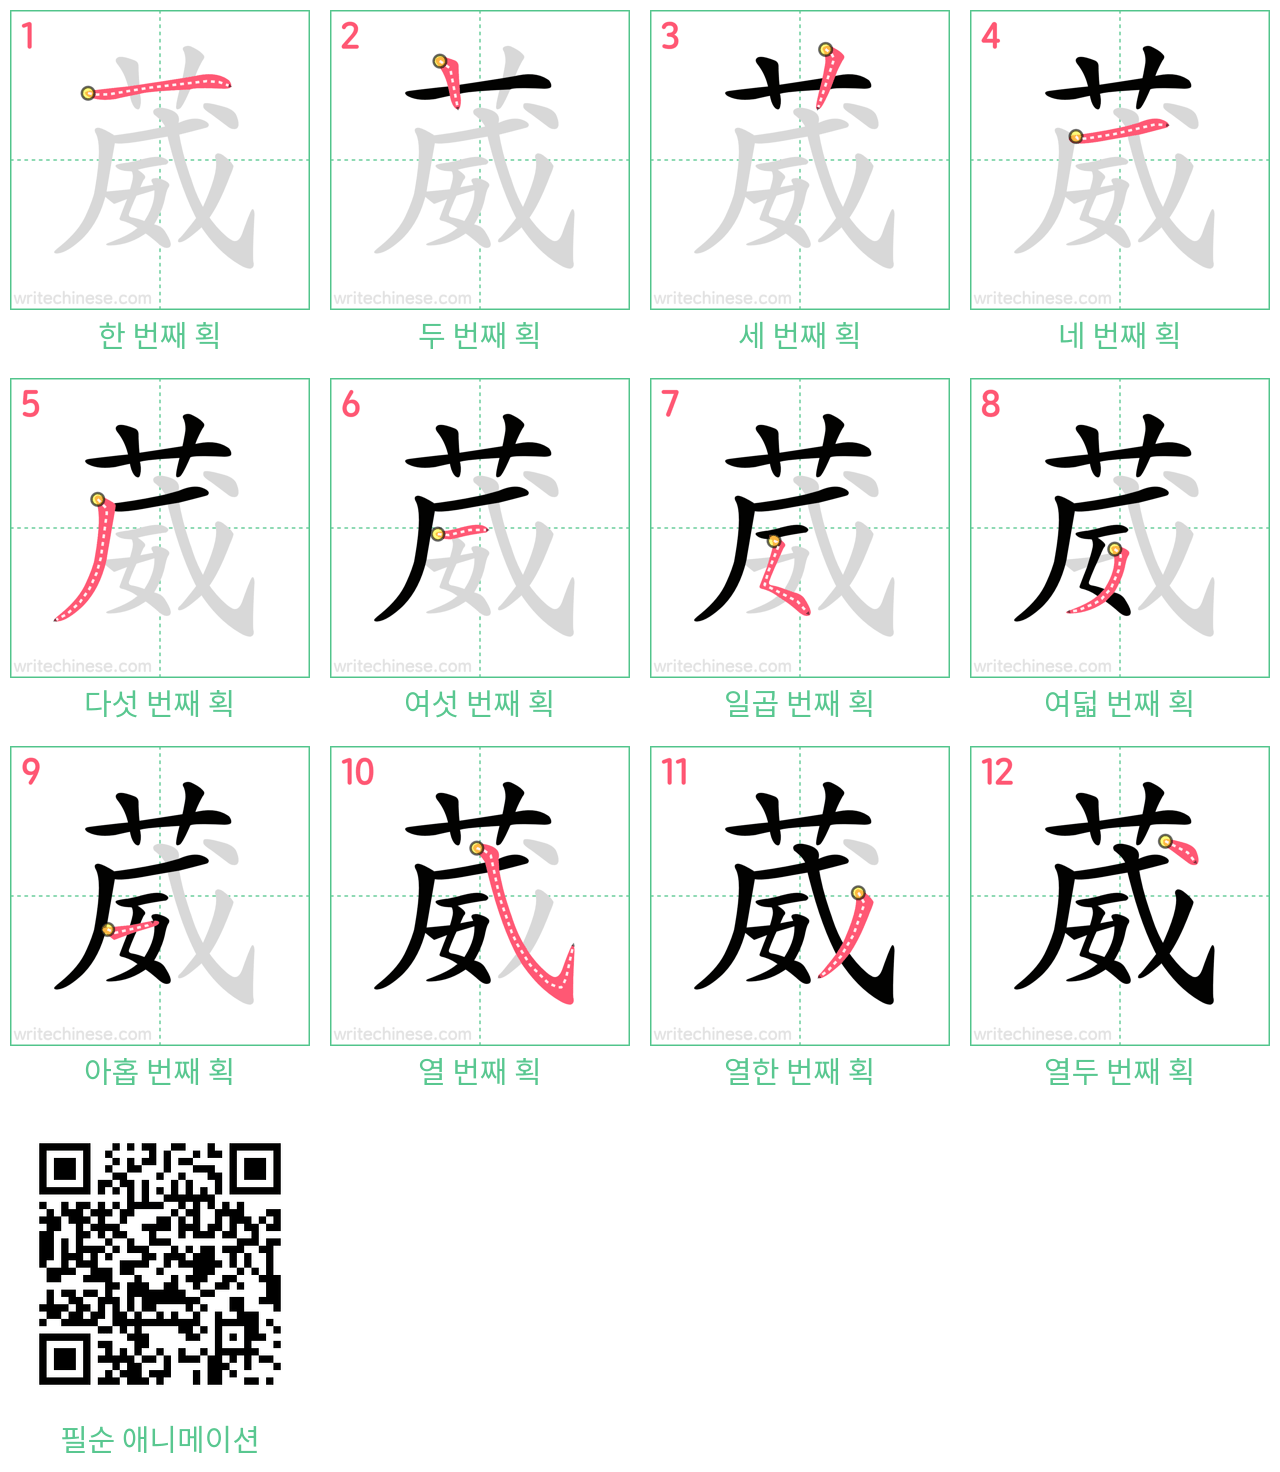 葳 step-by-step stroke order diagrams